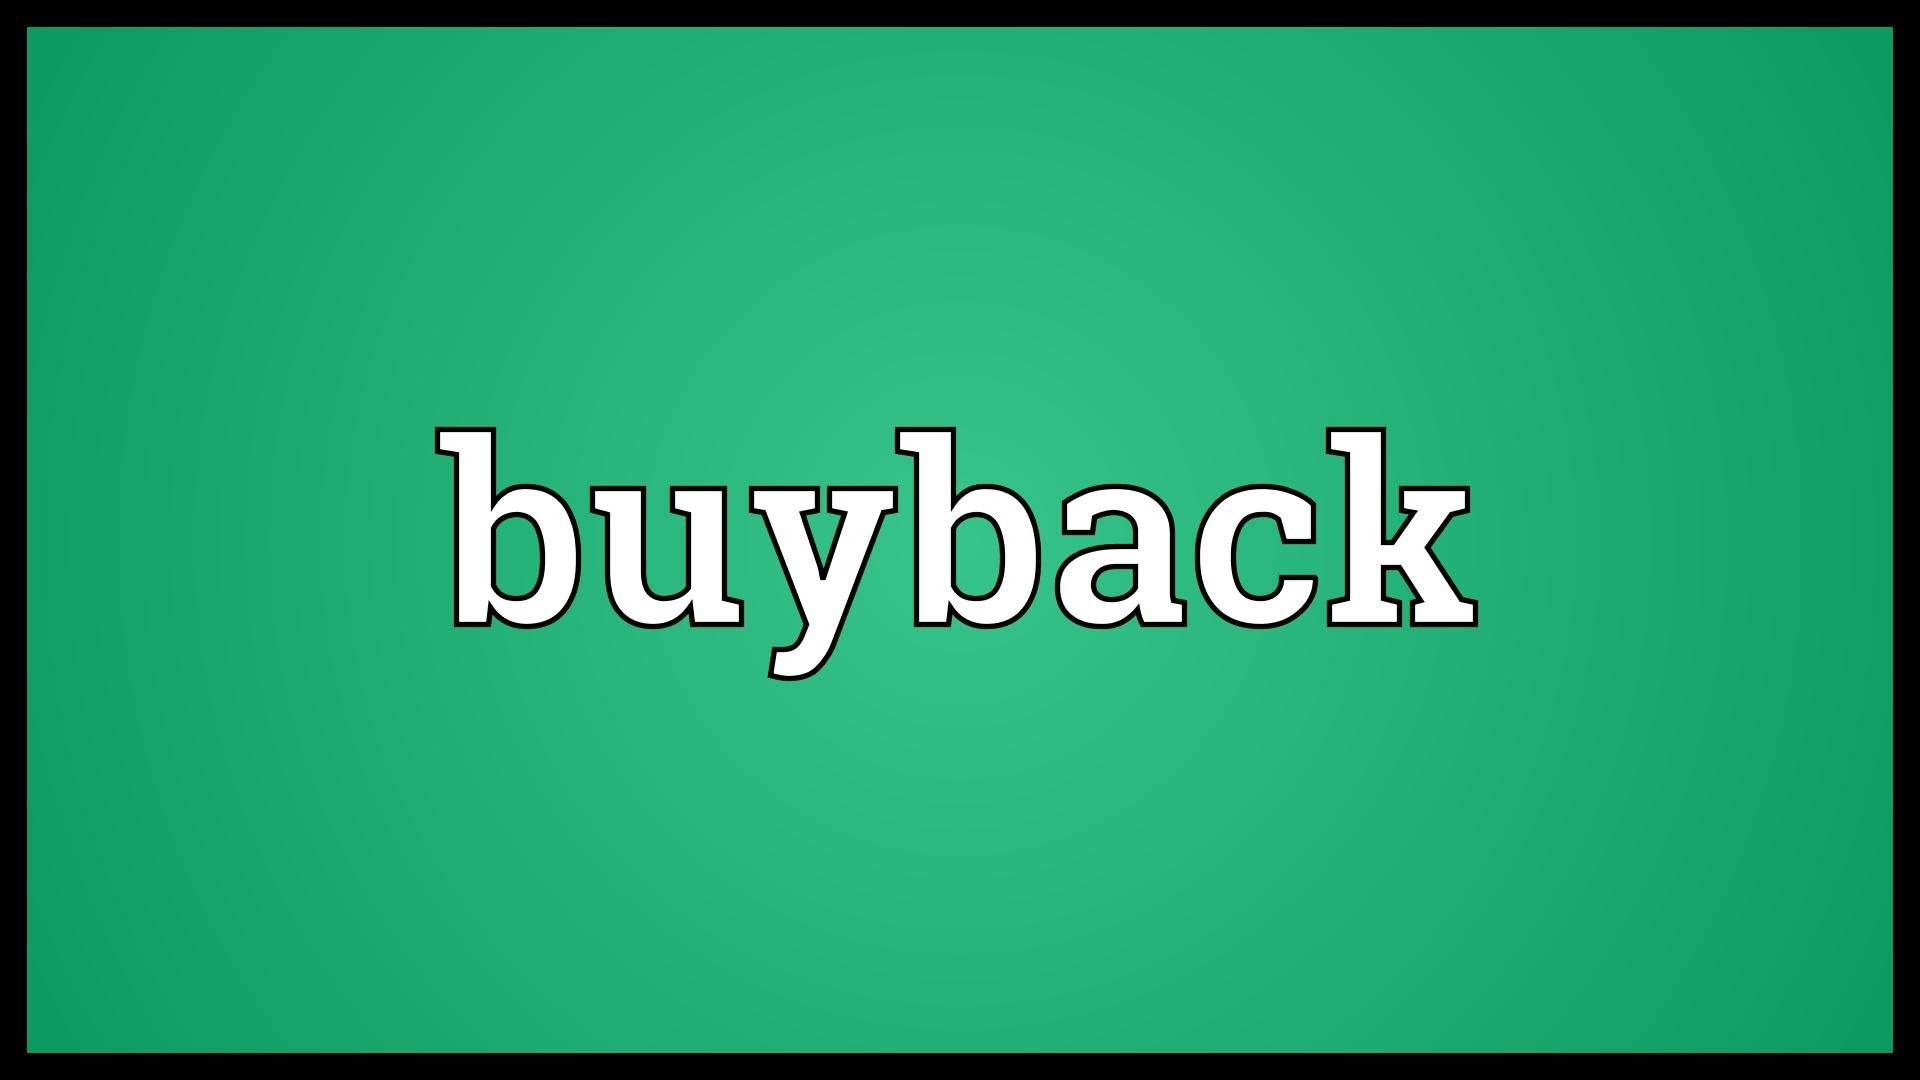 Buy back shop